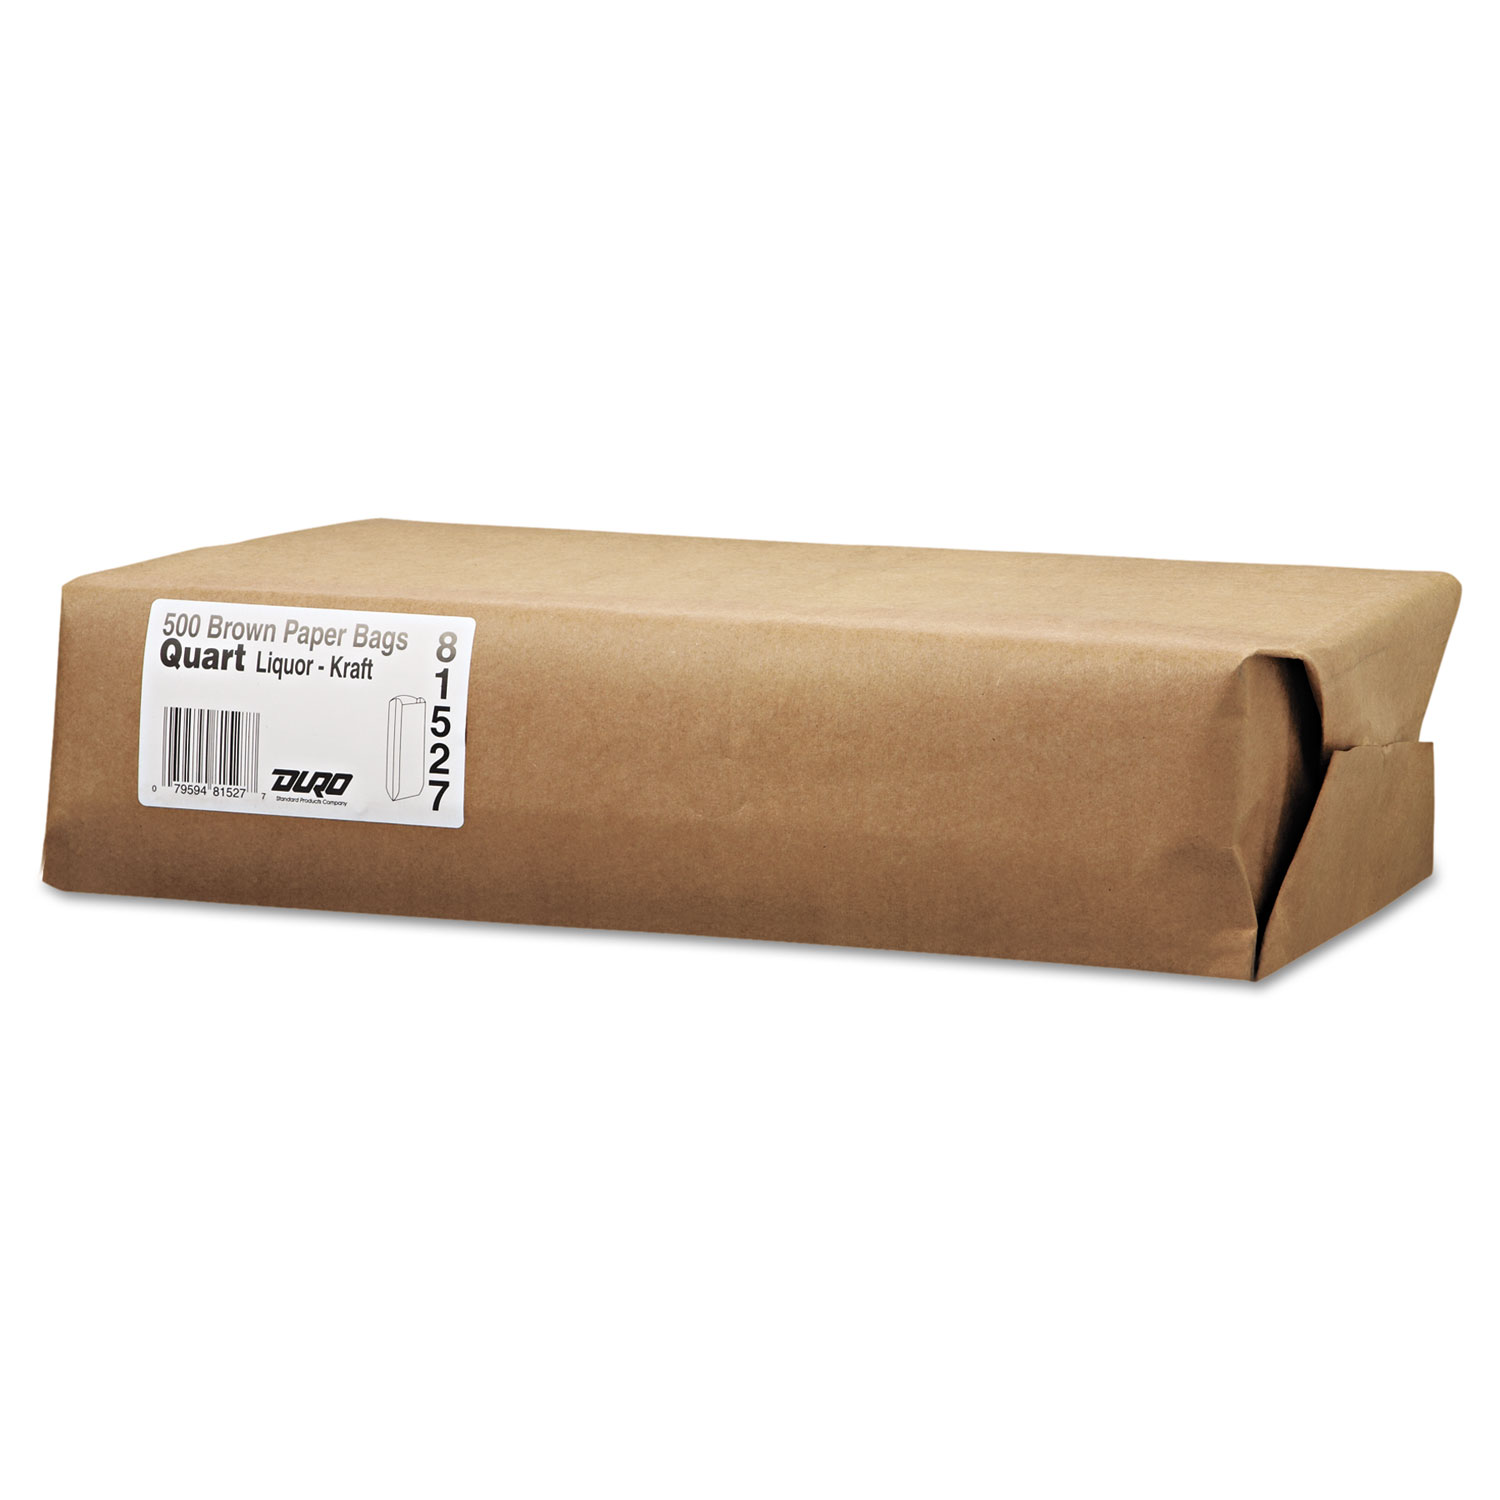 Quart Paper Liquor Bag, 35lb Kraft, Standard 4 1/4 x 2 1/2 x 16, 500 bags